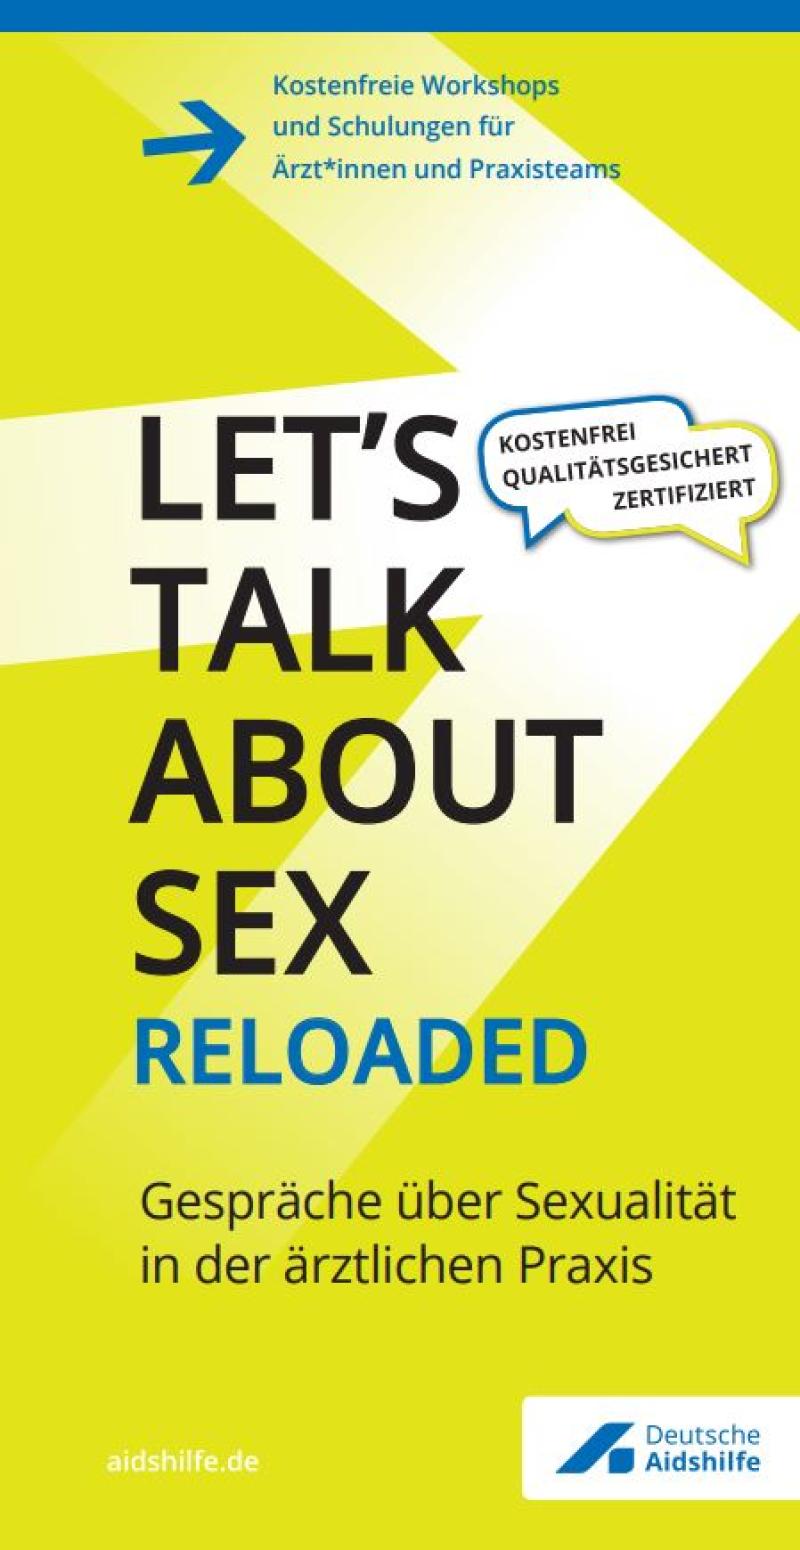 „Let’s talk about Sex reloaded“ Gespräche über Sexualität in der ärztlichen Praxis 